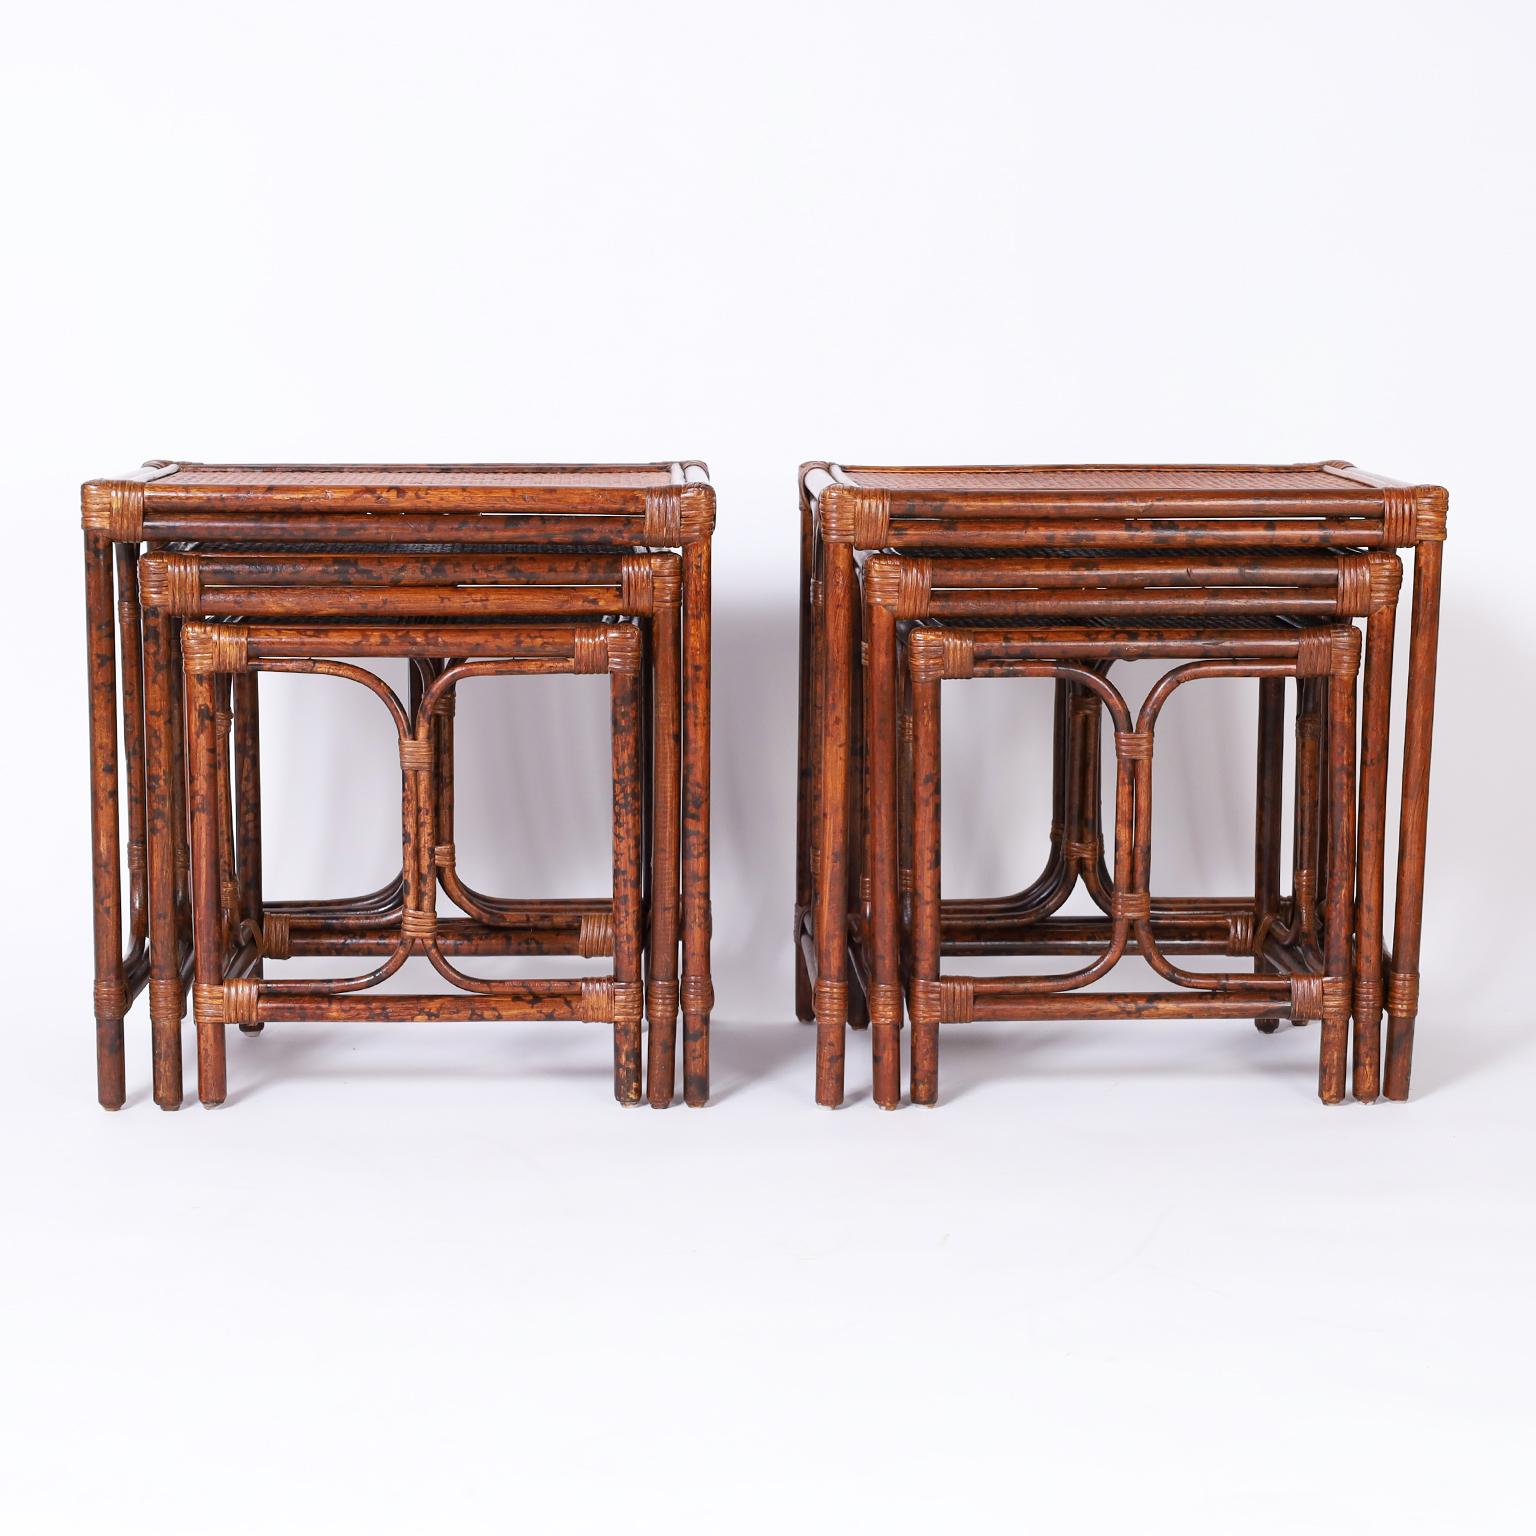 Seltenes Paar Nester aus Tischen oder Ständern im britischen Kolonialstil, jeweils mit Rahmen aus Bambusimitat, die auf den Tischplatten mit Schilf- und Grasstoffbahnen umwickelt sind.


